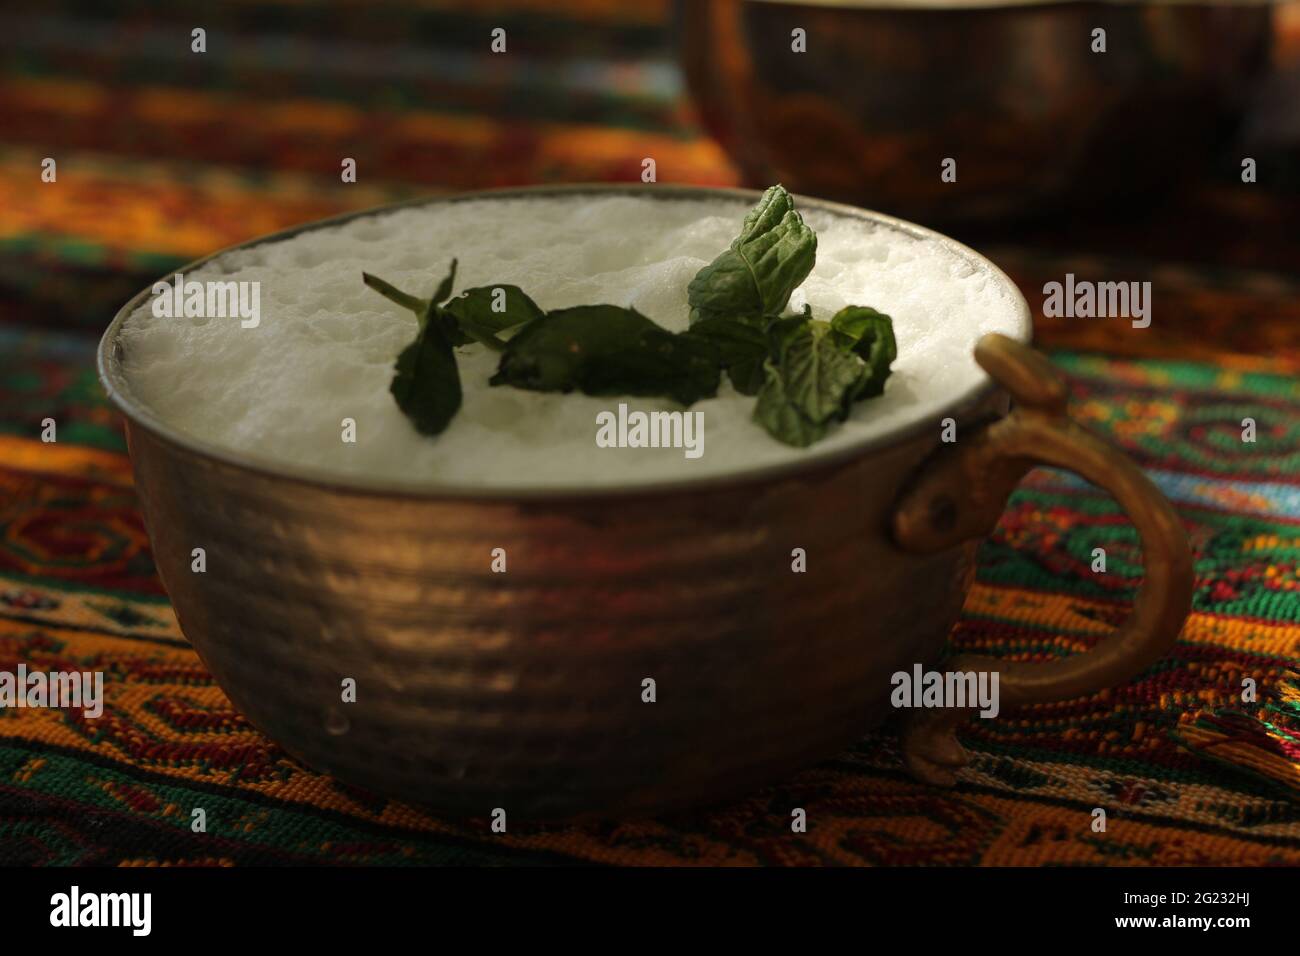 Boisson saine et naturelle servie dans une tasse de cuivre traditionnelle anatolienne faite à la main décorée de feuilles de menthe fraîche. Banque D'Images